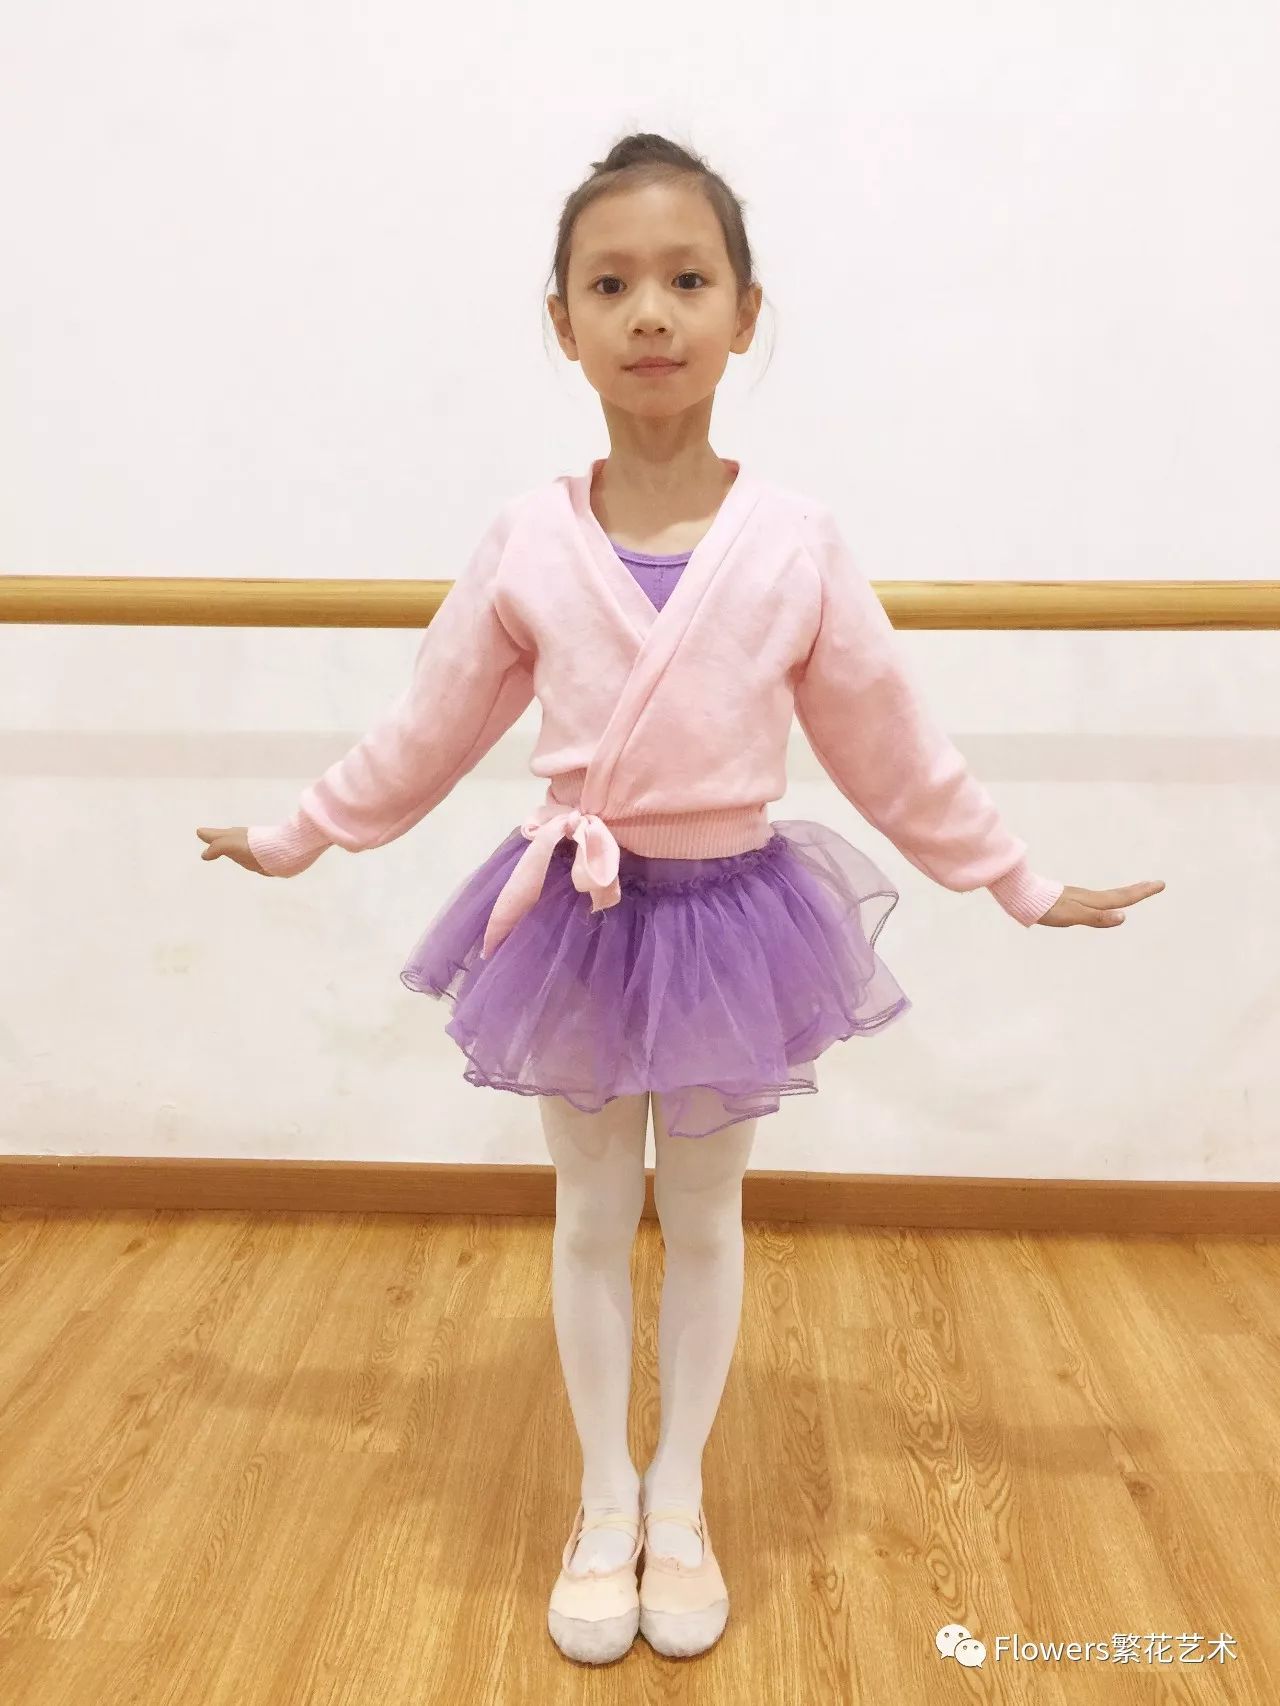 考级要求:2018年北京舞蹈学院中国舞考级地点:flowers